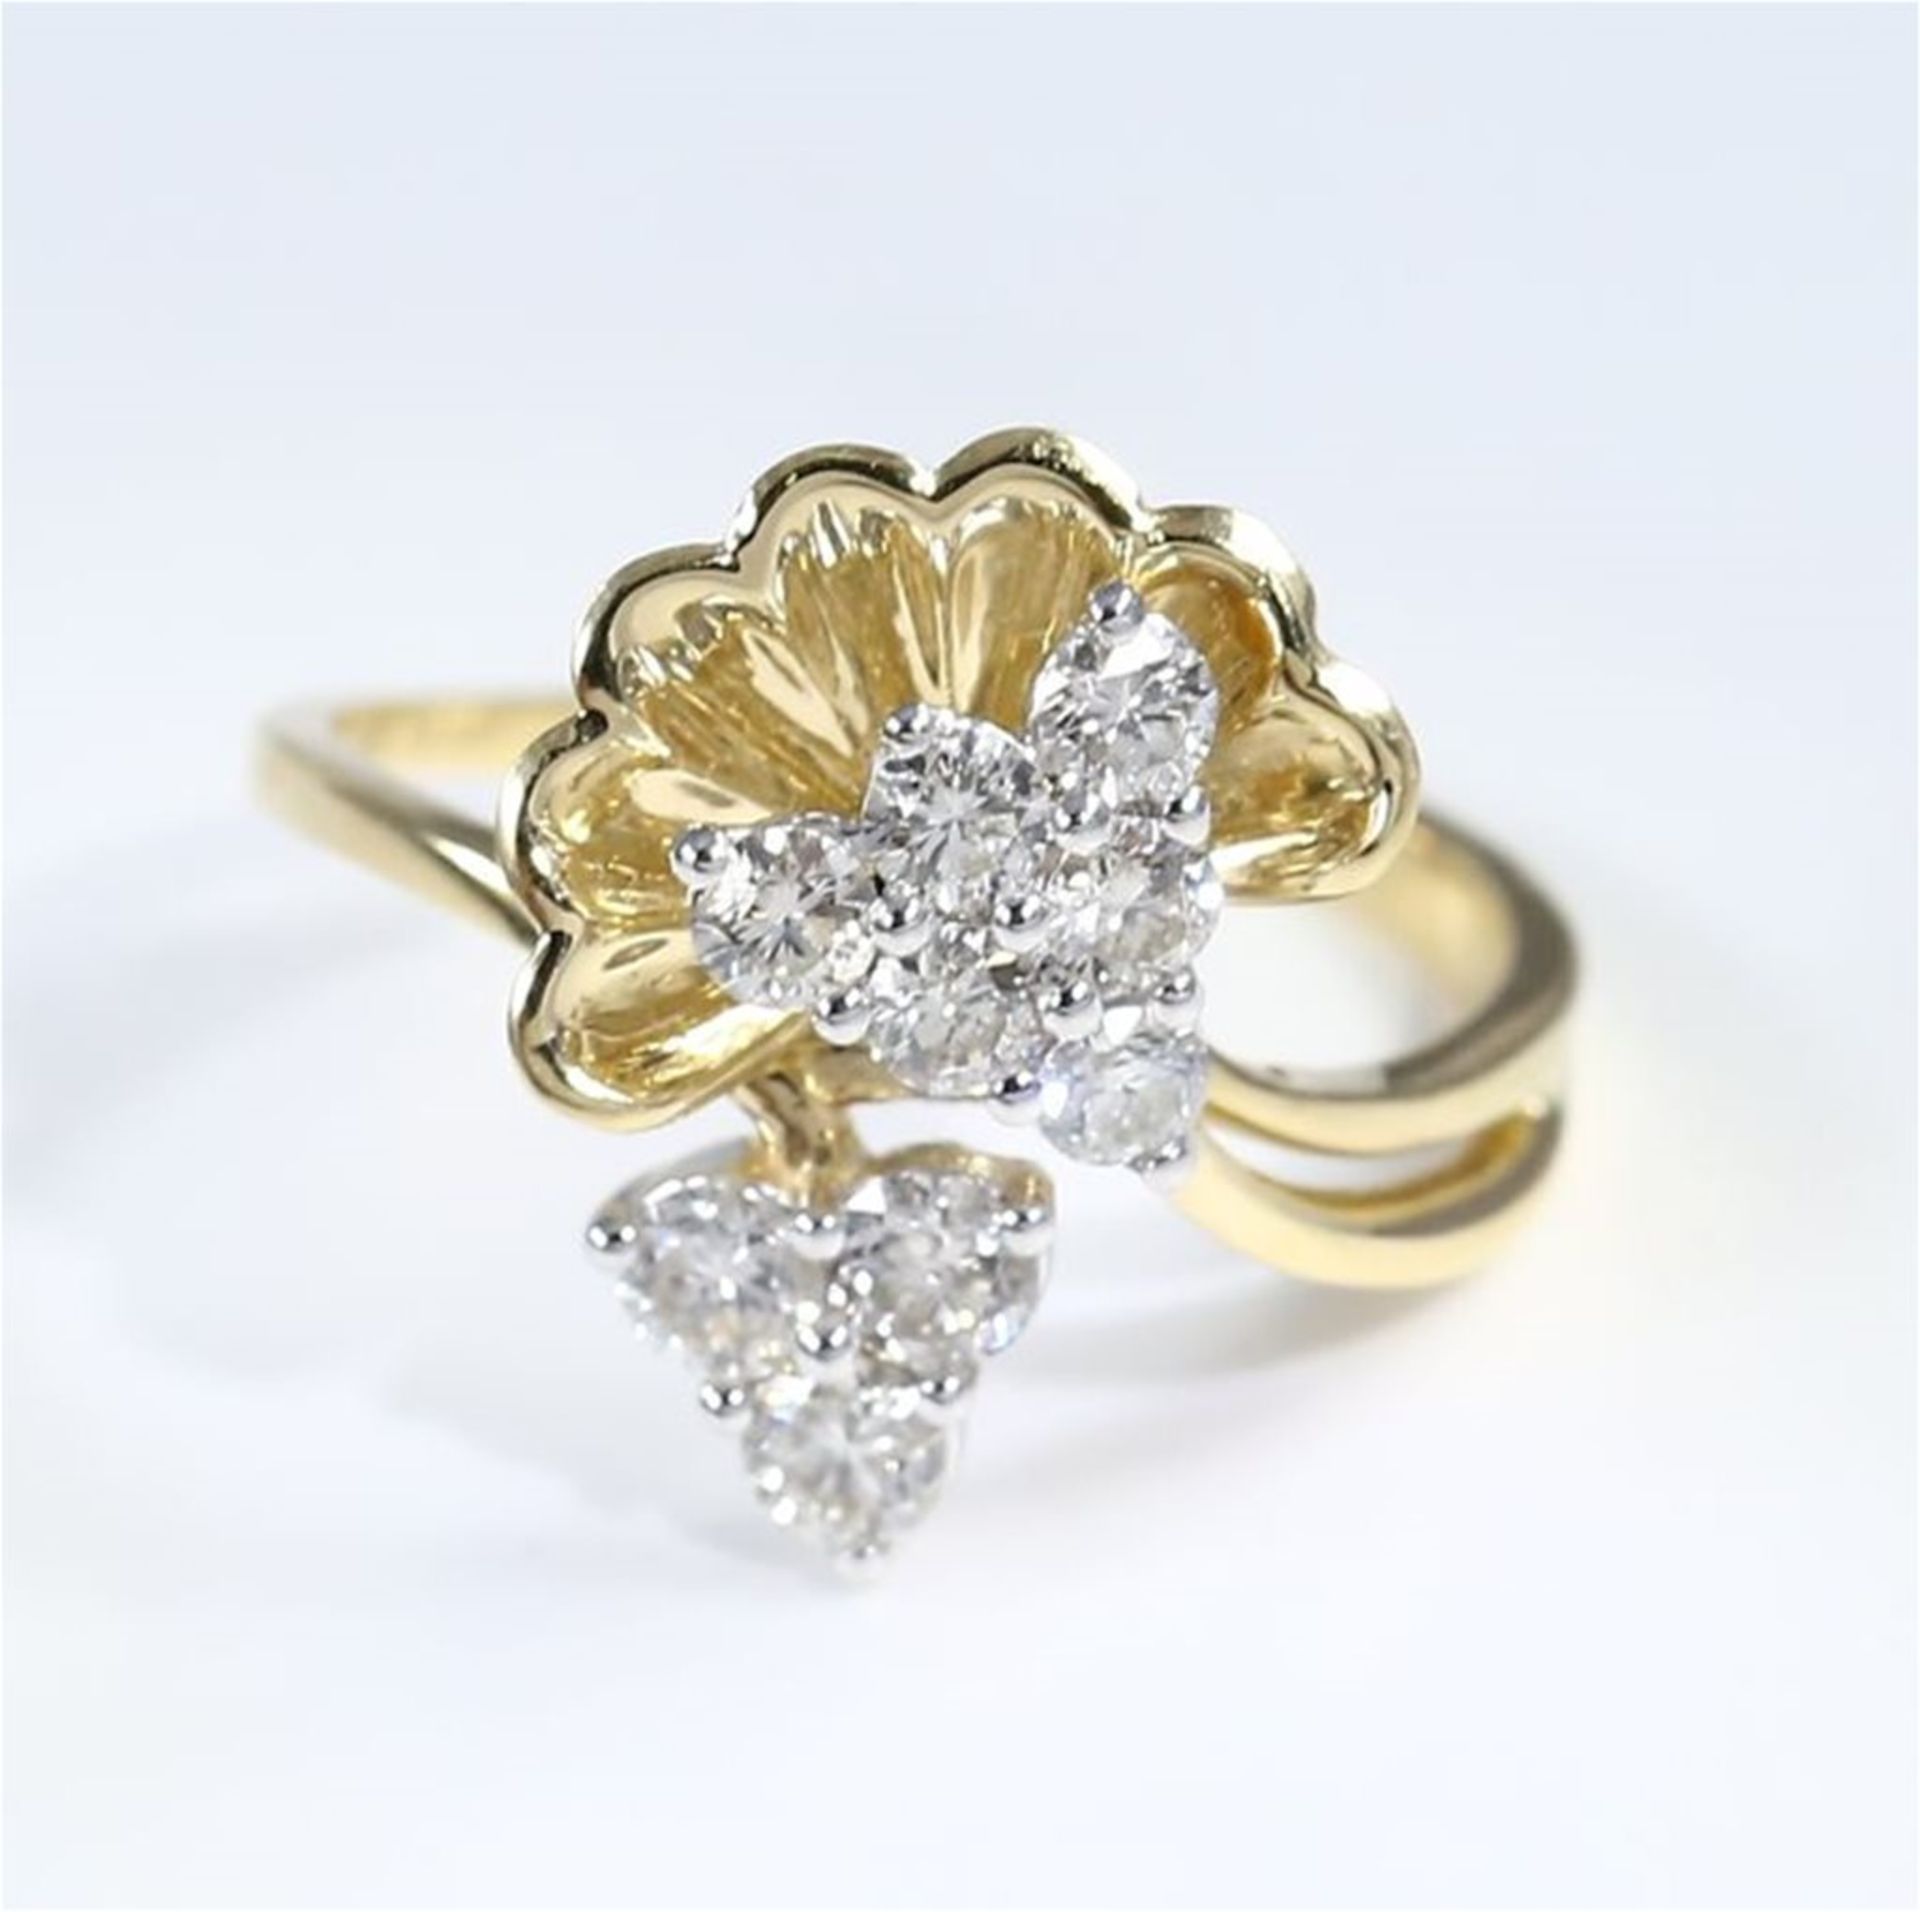 IGI certified 18 K / 750 Yellow gold Designer Diamond Ring